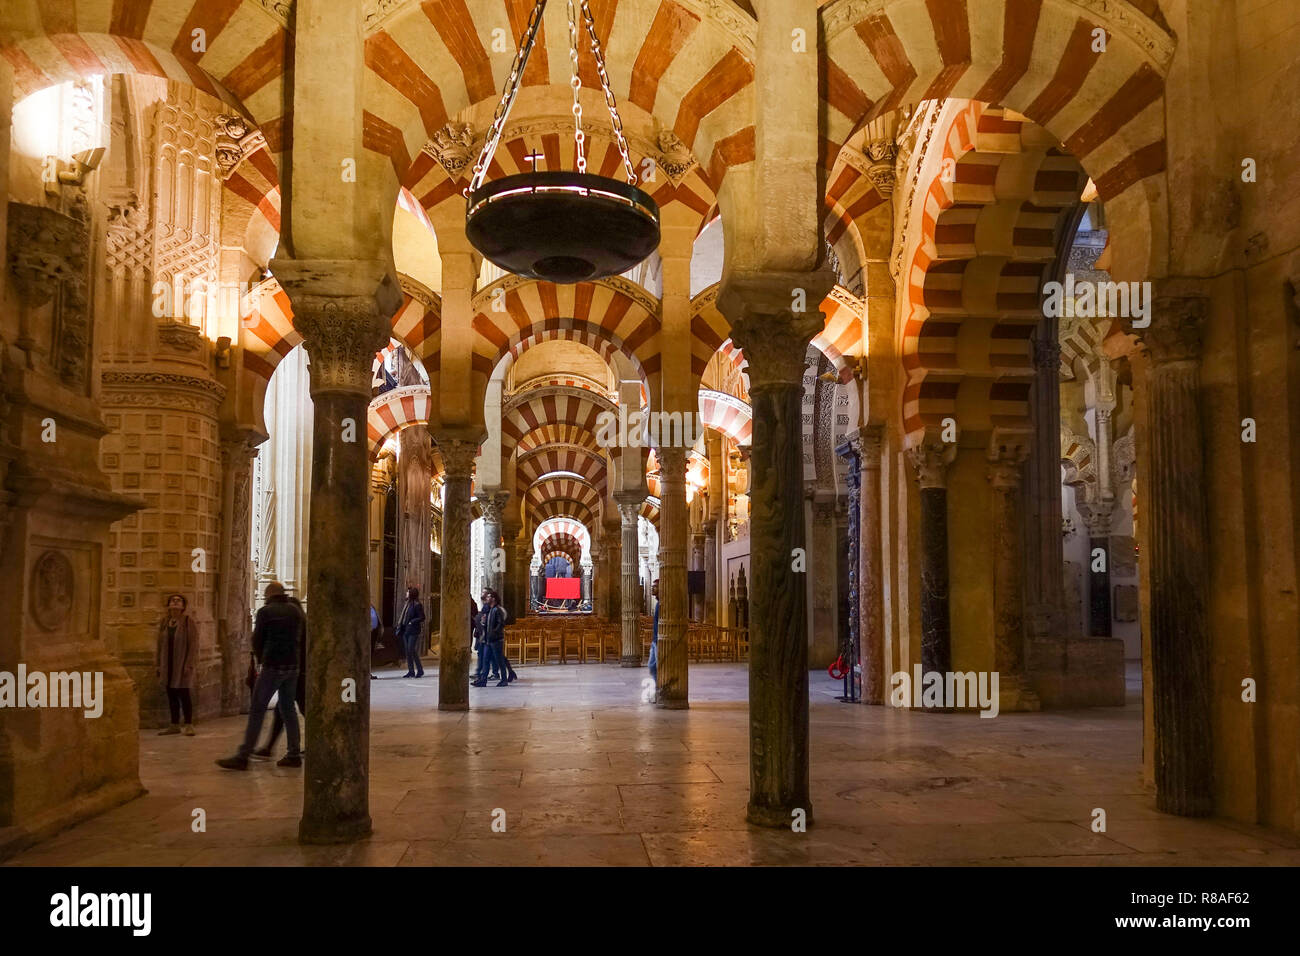 Innenraum der Moschee von Cordoba, Kathedrale, Córdoba, Große Moschee von Córdoba, La Mezquita, Andalusien, Südspanien. Stockfoto